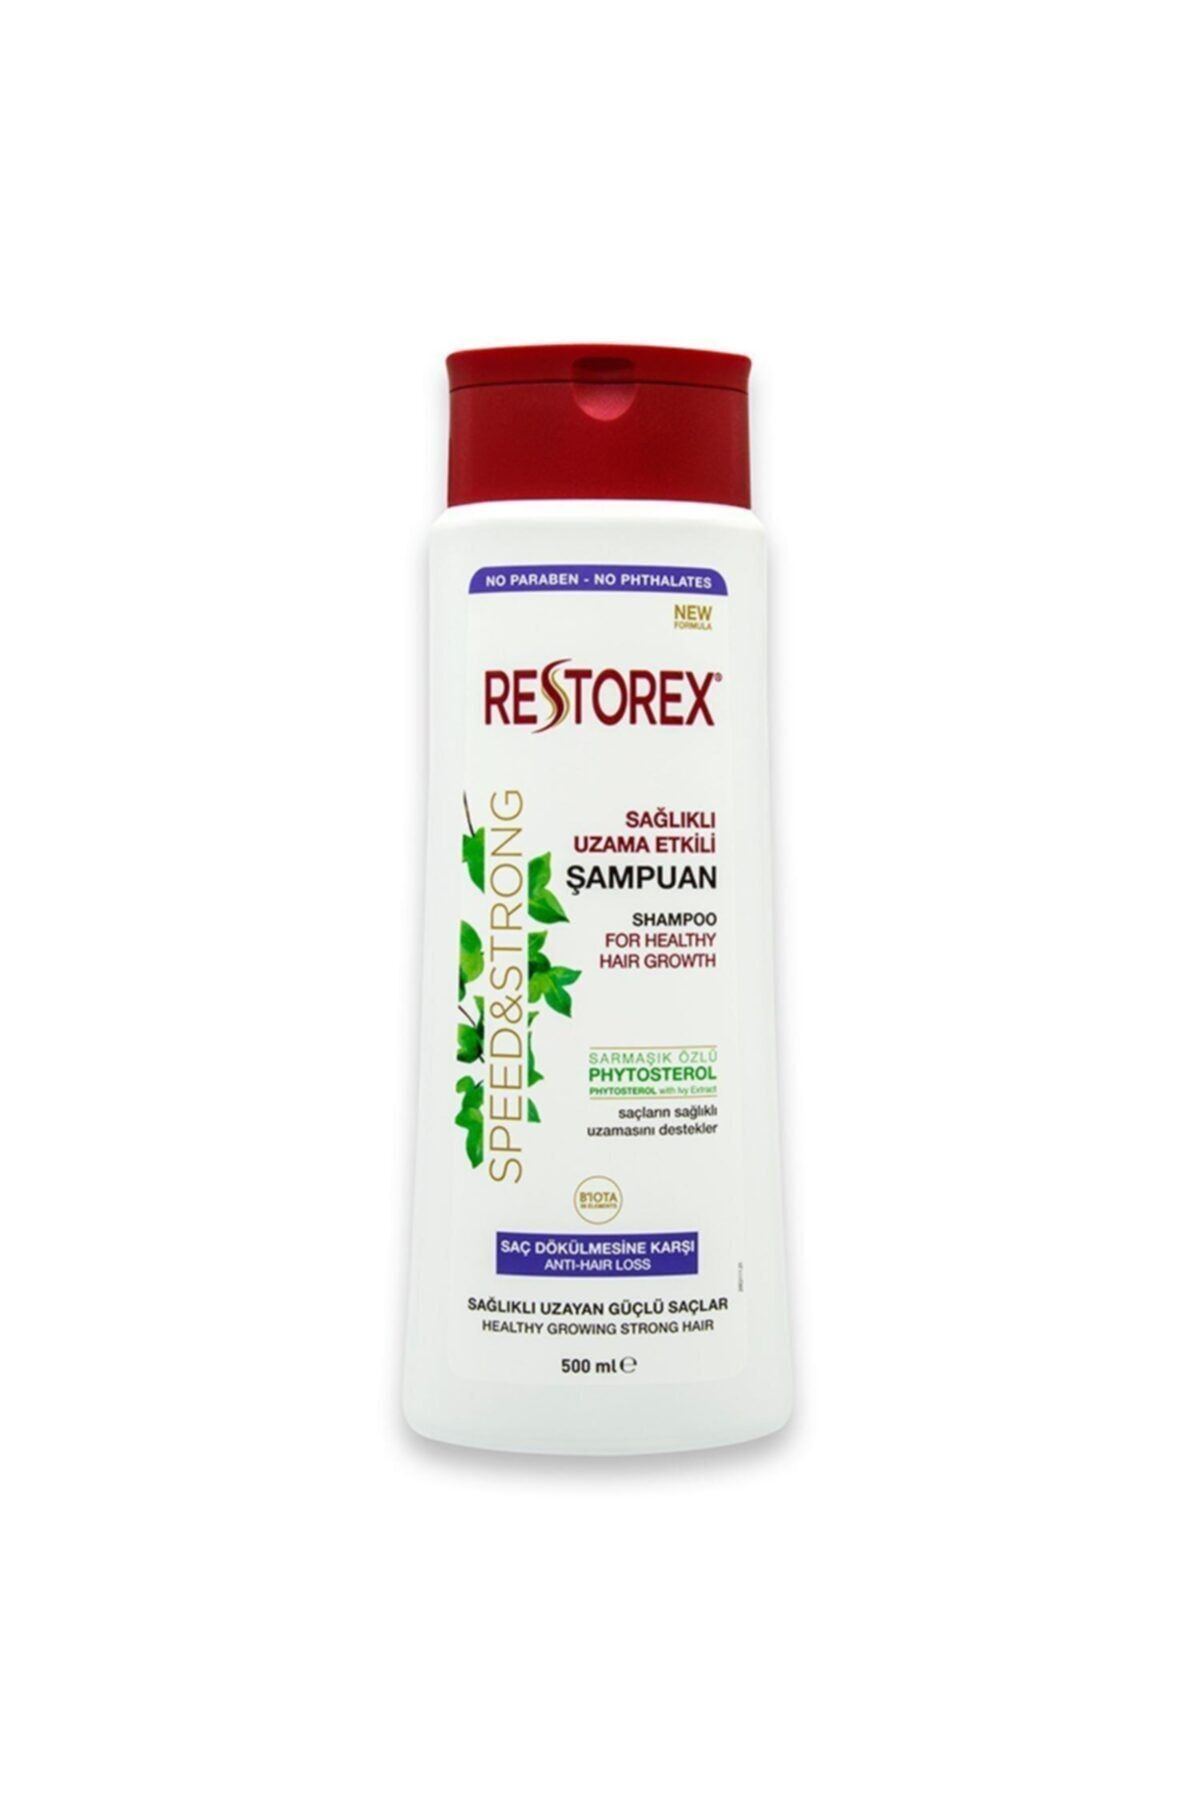 Restorex Sağlıklı Uzama Etkili Saç Dökülmesine Karşı Etkili Şampuan 500ml 6 Adet